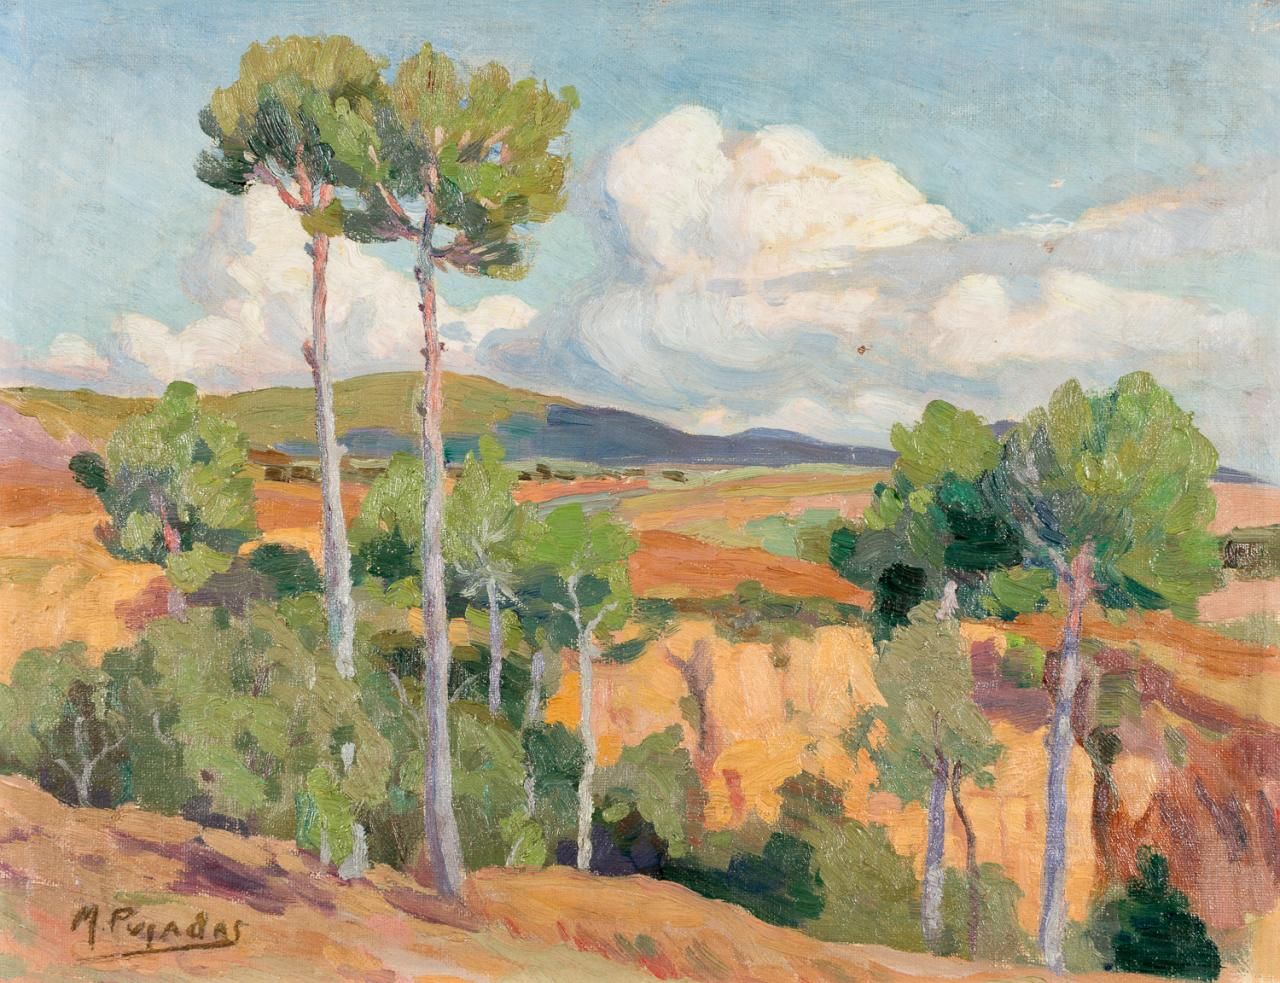 MIQUEL PUJADAS i BADIA (Terrassa, 1892-1974) 风景
粘在táblex上的布面油画
27,5 x 36 cm
左下角有&hellip;